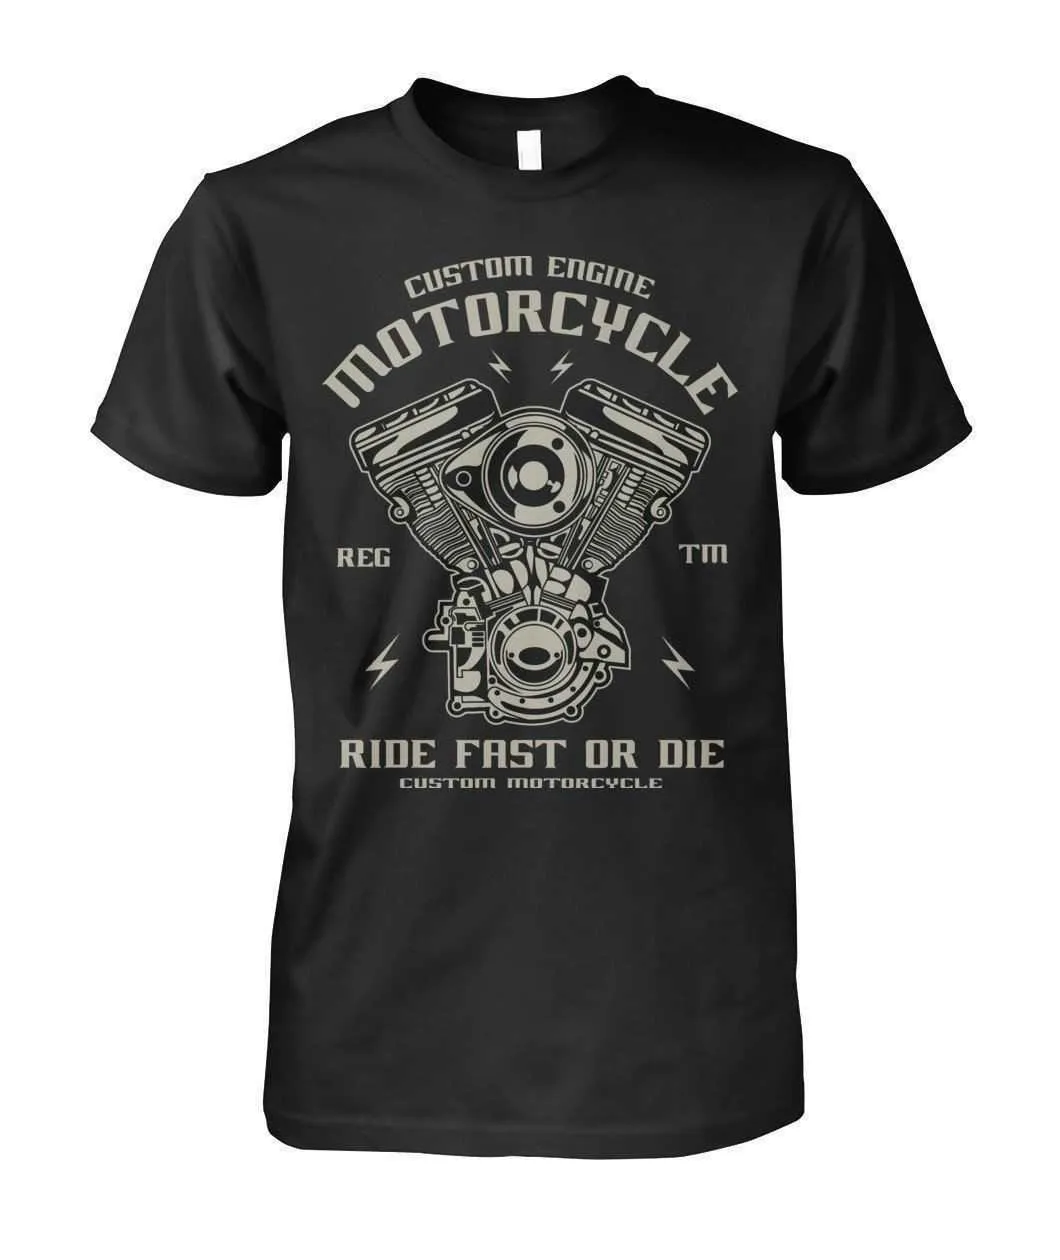 재미 있은 캐주얼 짧은 소매 TShirts 바이커 티셔츠 맞춤 엔진 오토바이 타기 빠른 또는 죽을 망섬 망과 티셔츠 Q190518